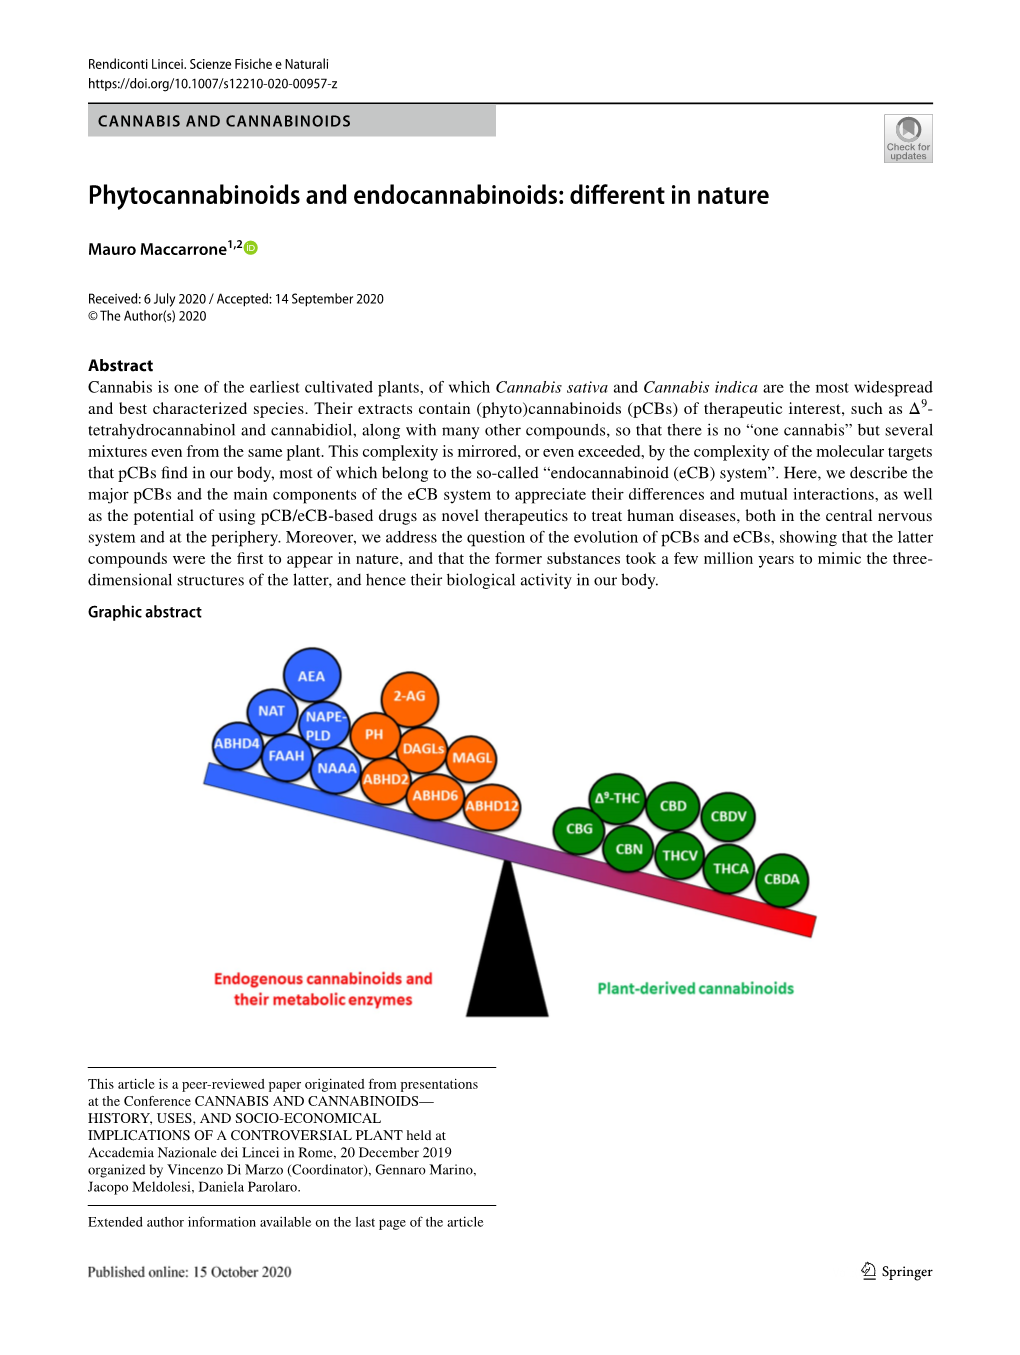 Phytocannabinoids and Endocannabinoids: Diferent in Nature